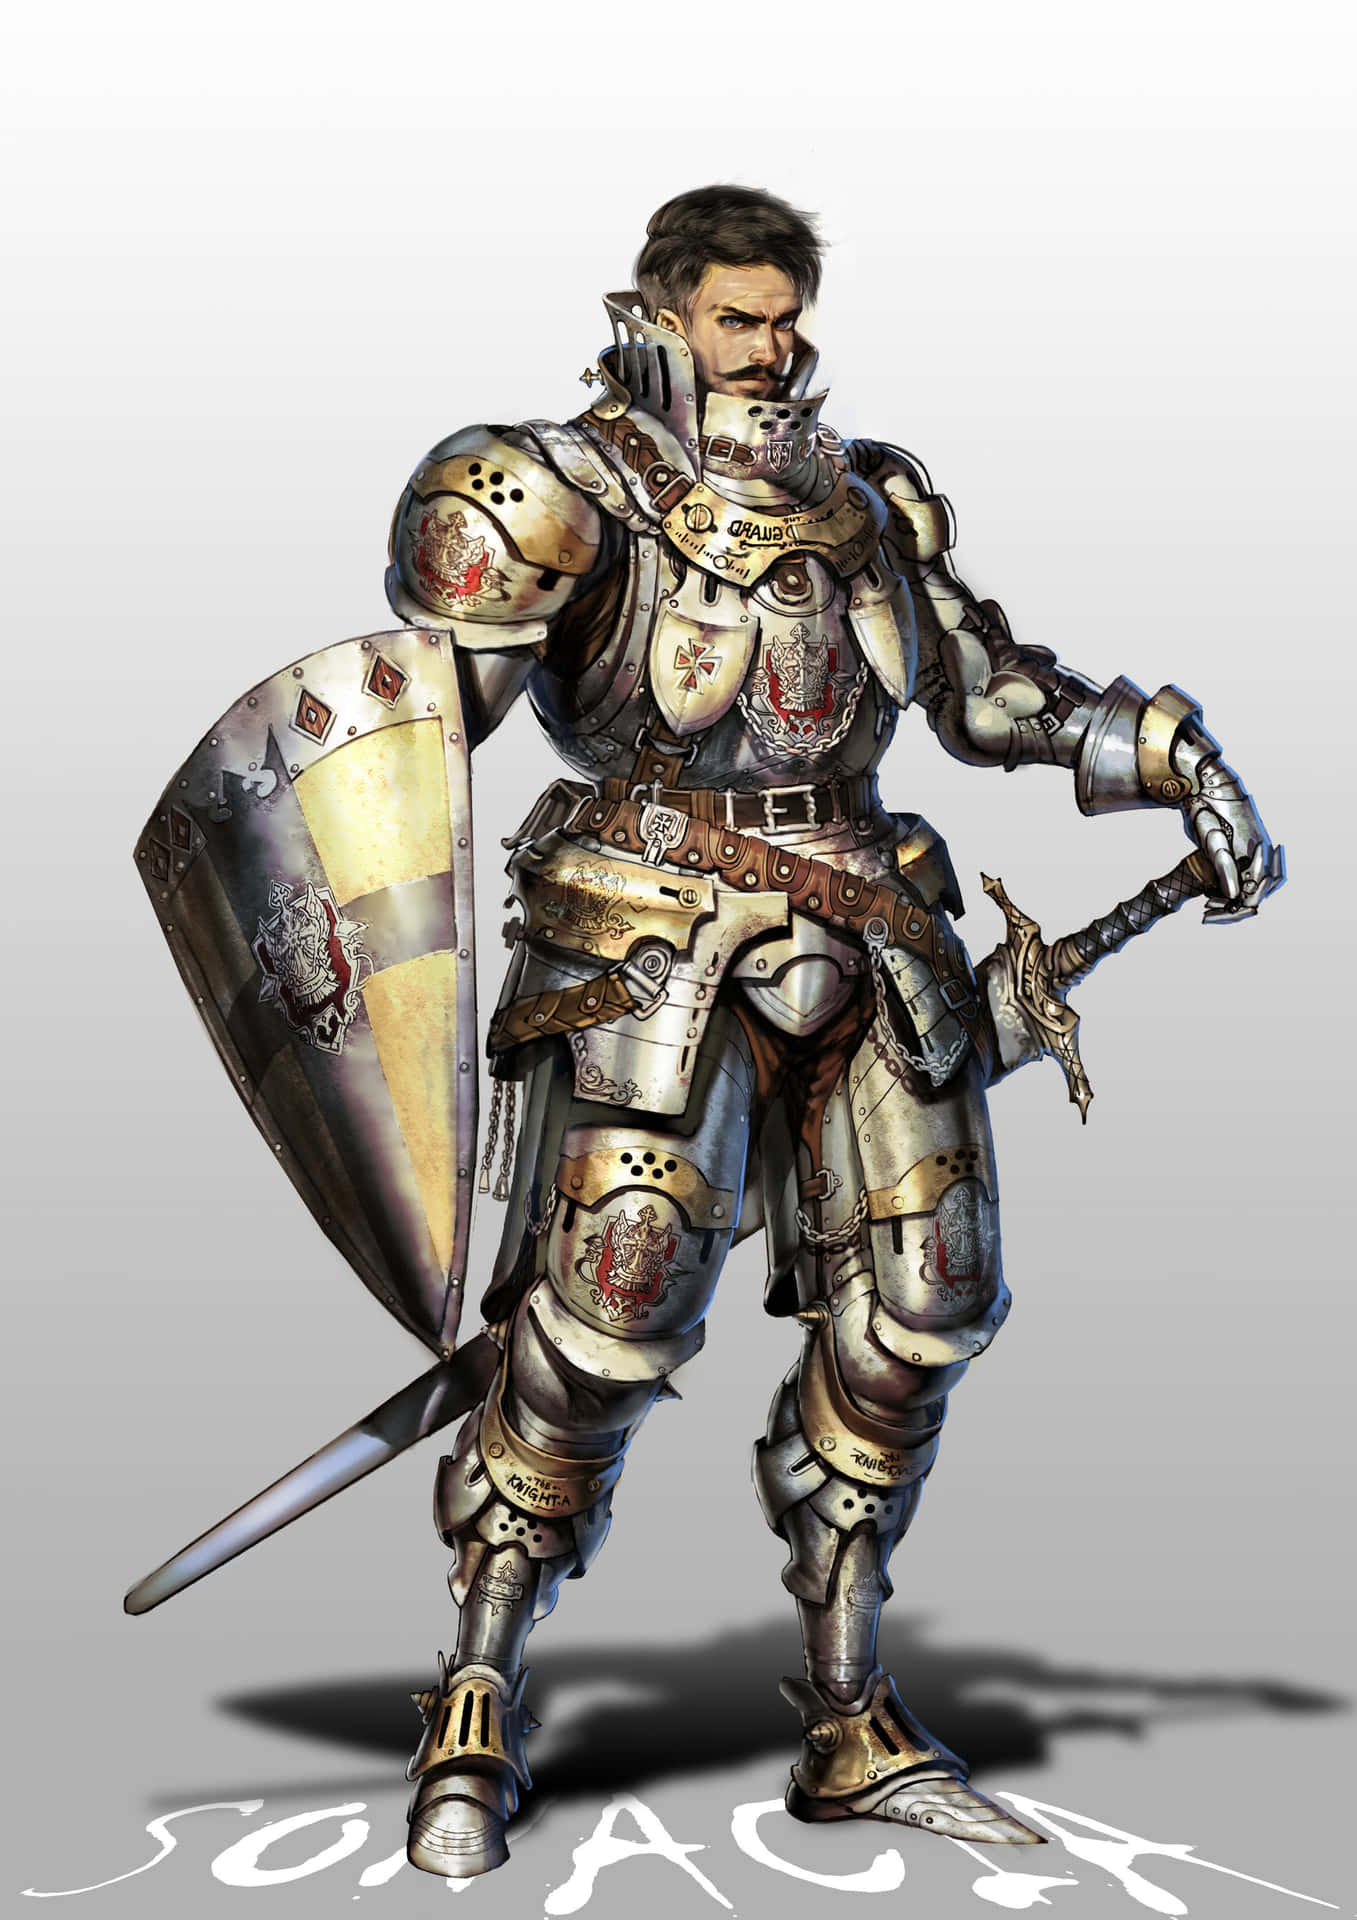 Valiant Knightin Armor Wallpaper